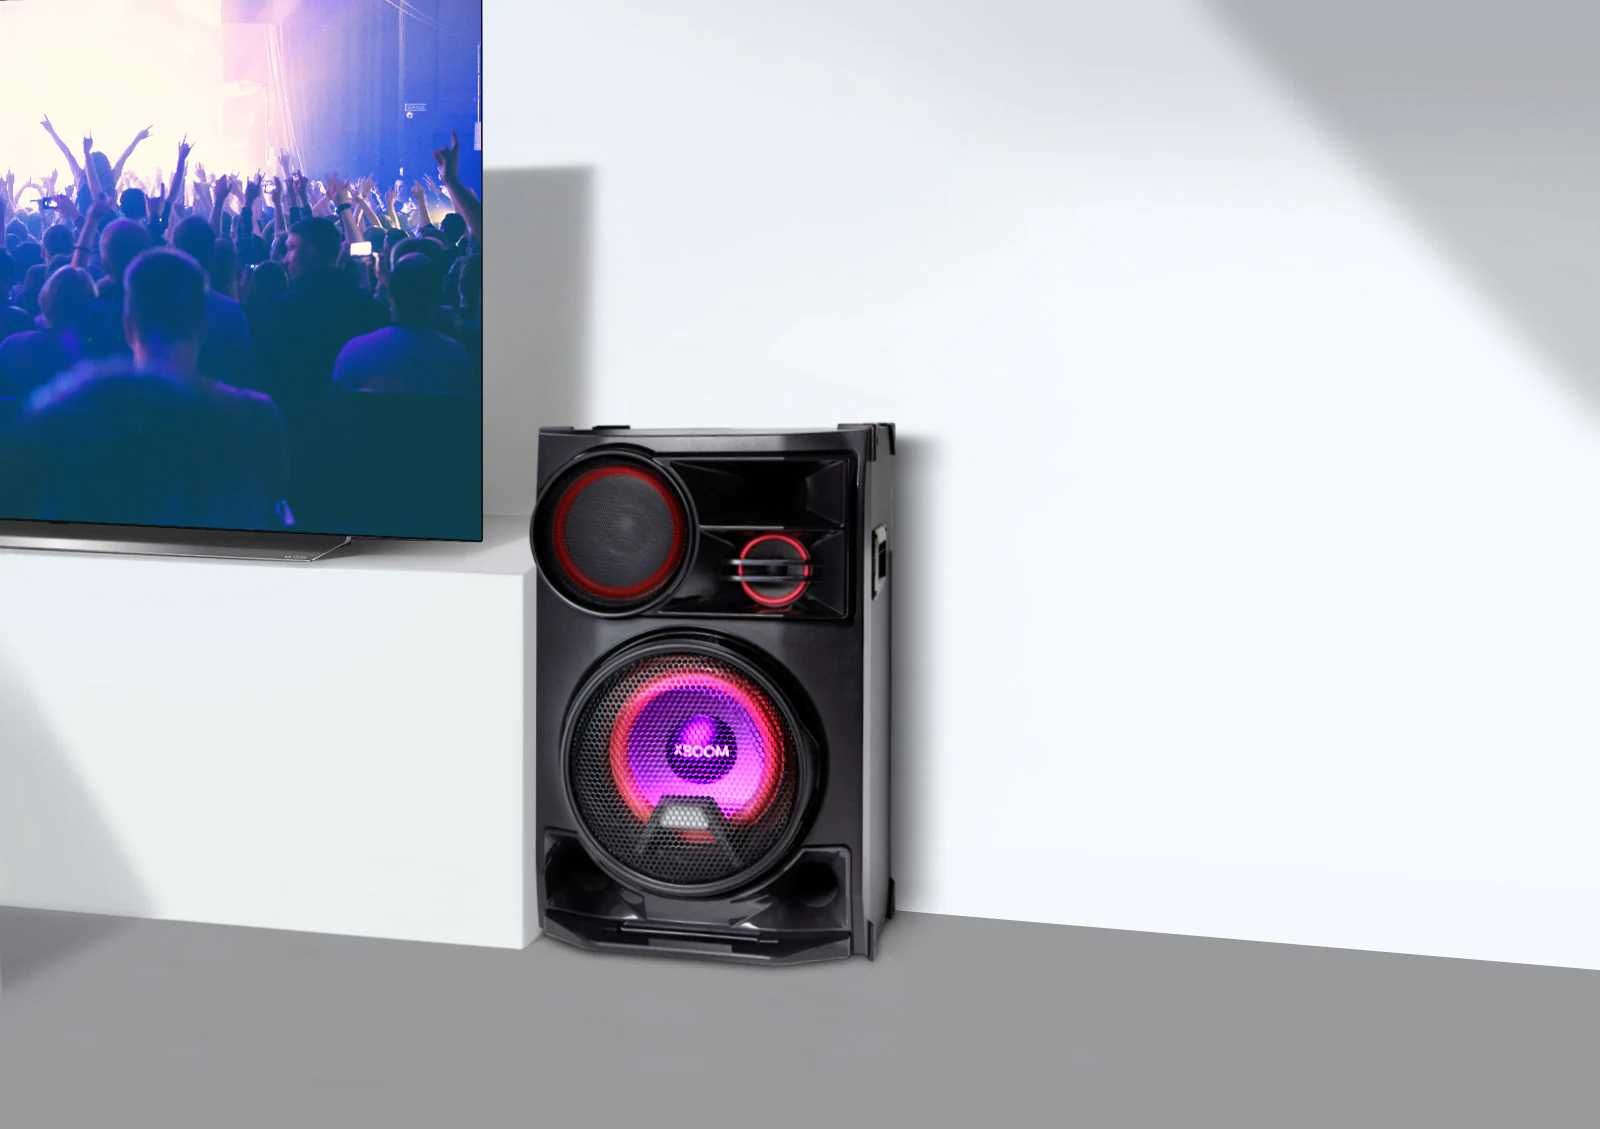 NEW! Музыкальный центр LG XBOOM CL98 (3500Watt) с бесплатной доставкой